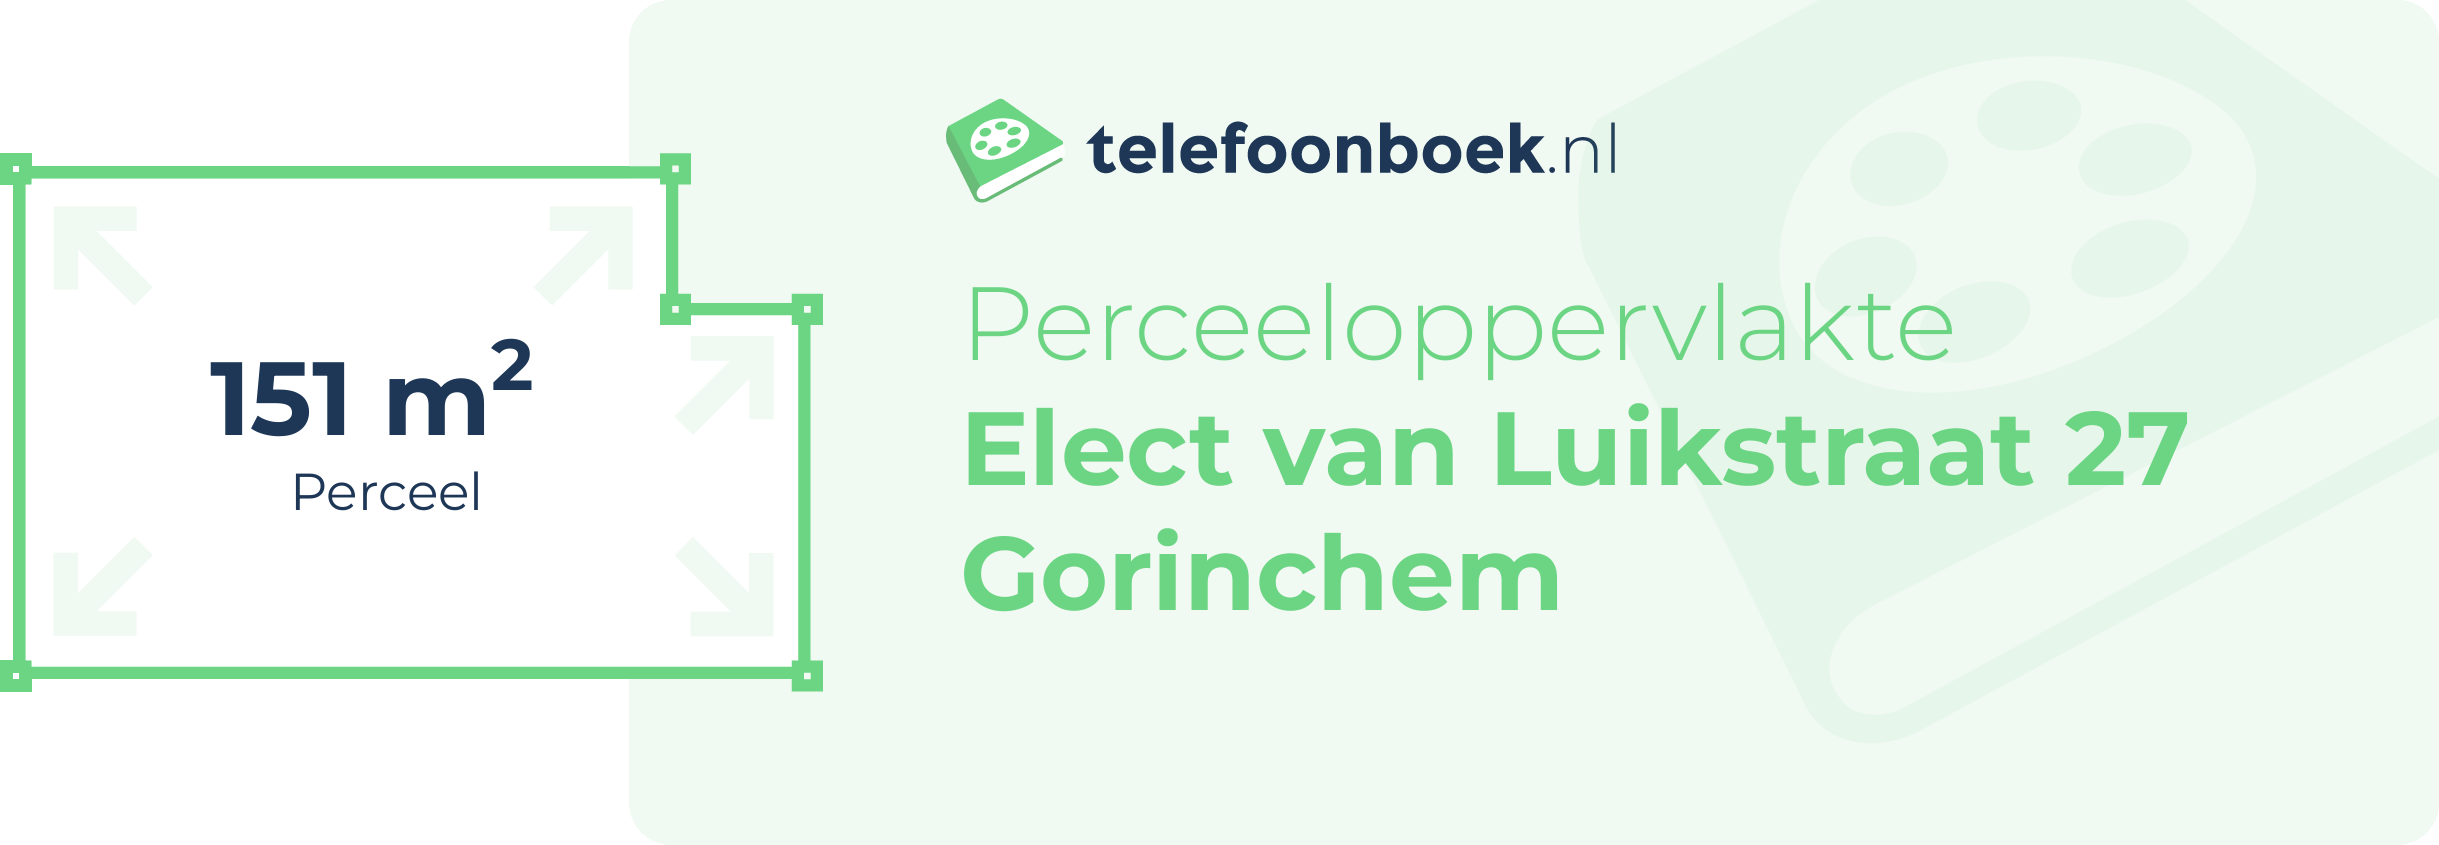 Perceeloppervlakte Elect Van Luikstraat 27 Gorinchem